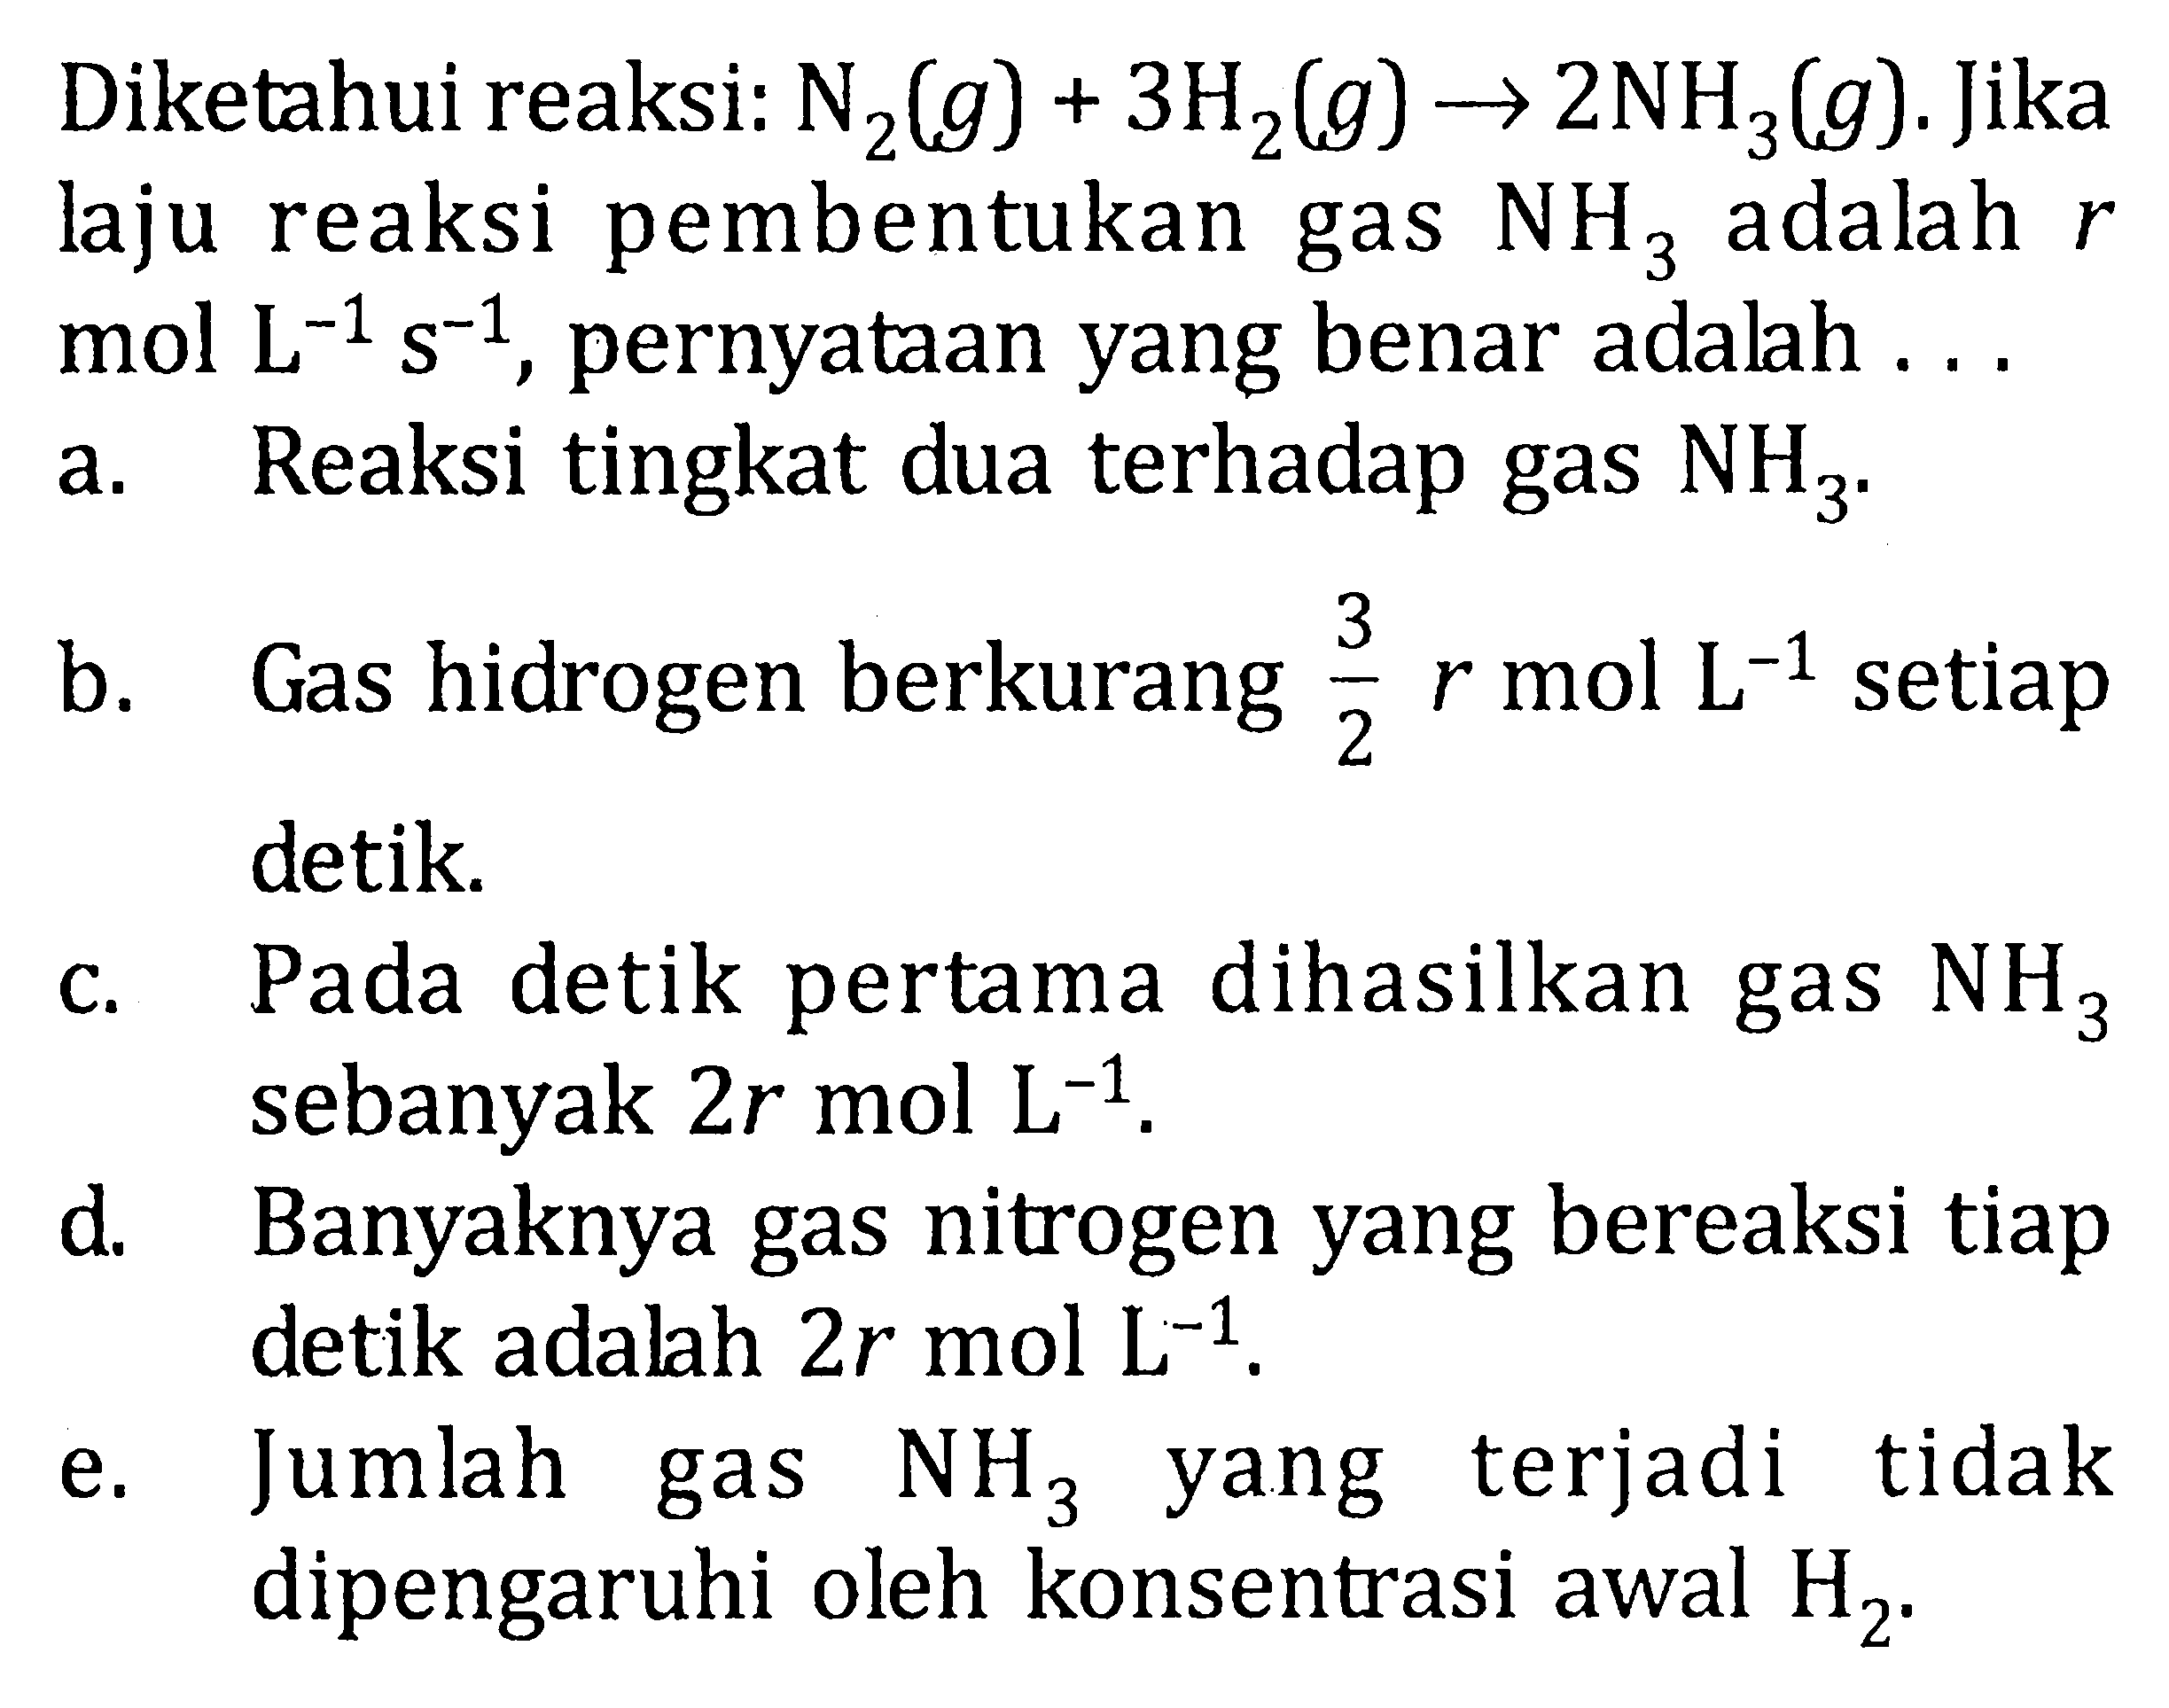 Diketahui reaksi: N2(g)+3 H2(g) -> 2 NH3(g). Jika laju reaksi pembentukan gas NH3 adalah r mol L^(-1) s^(-1), pernyataan yang benar adalah ...  a. Reaksi tingkat dua terhadap gas NH3. b. Gas hidrogen berkurang 3/2 r mol L^(-1) setiap detik. c. Pada detik pertama dihasilkan gas NH3 sebanyak 2 r mol L^(-1). d. Banyaknya gas nitrogen yang bereaksi tiap detik adalah 2 r mol L^(-1). e. Jumlah gas NH3 yang terjadi tidak dipengaruhi oleh konsentrasi awal H2.